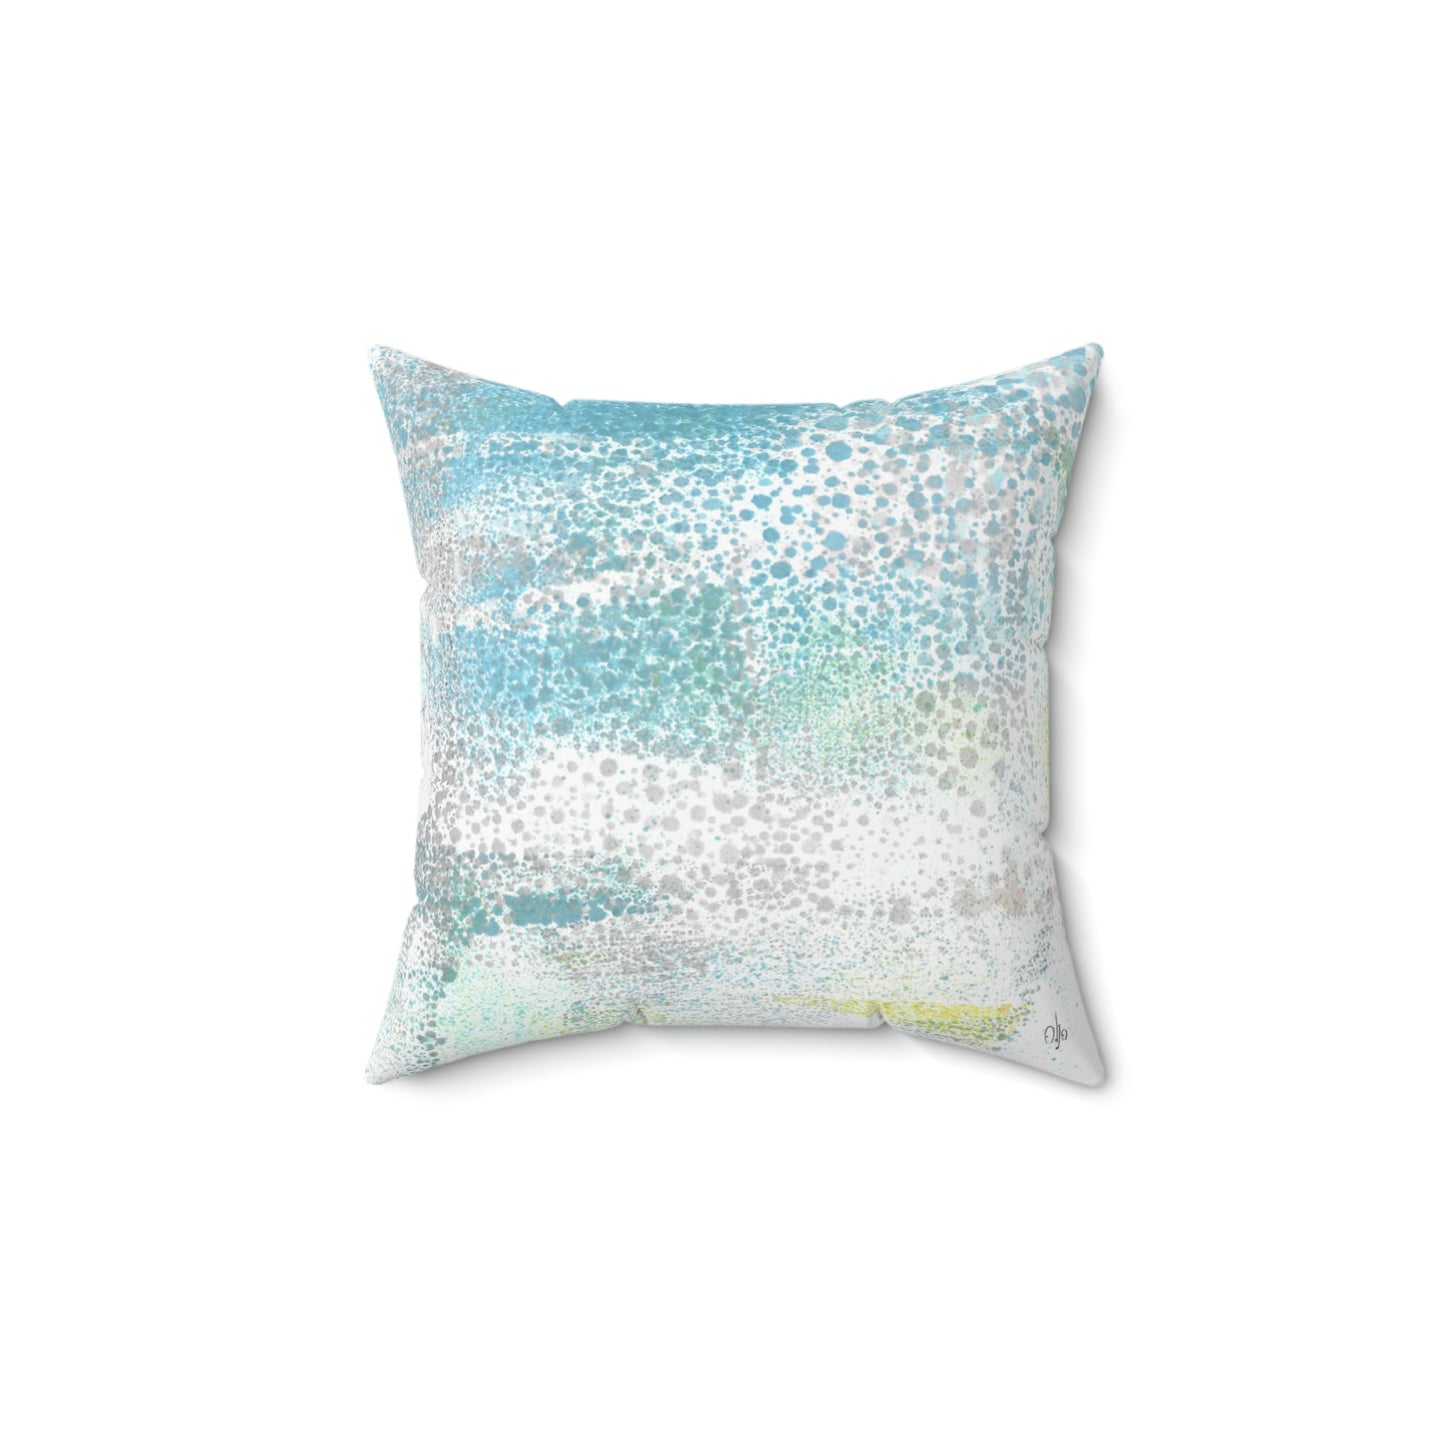 Gentle Rain Square Pillow - Alja Design